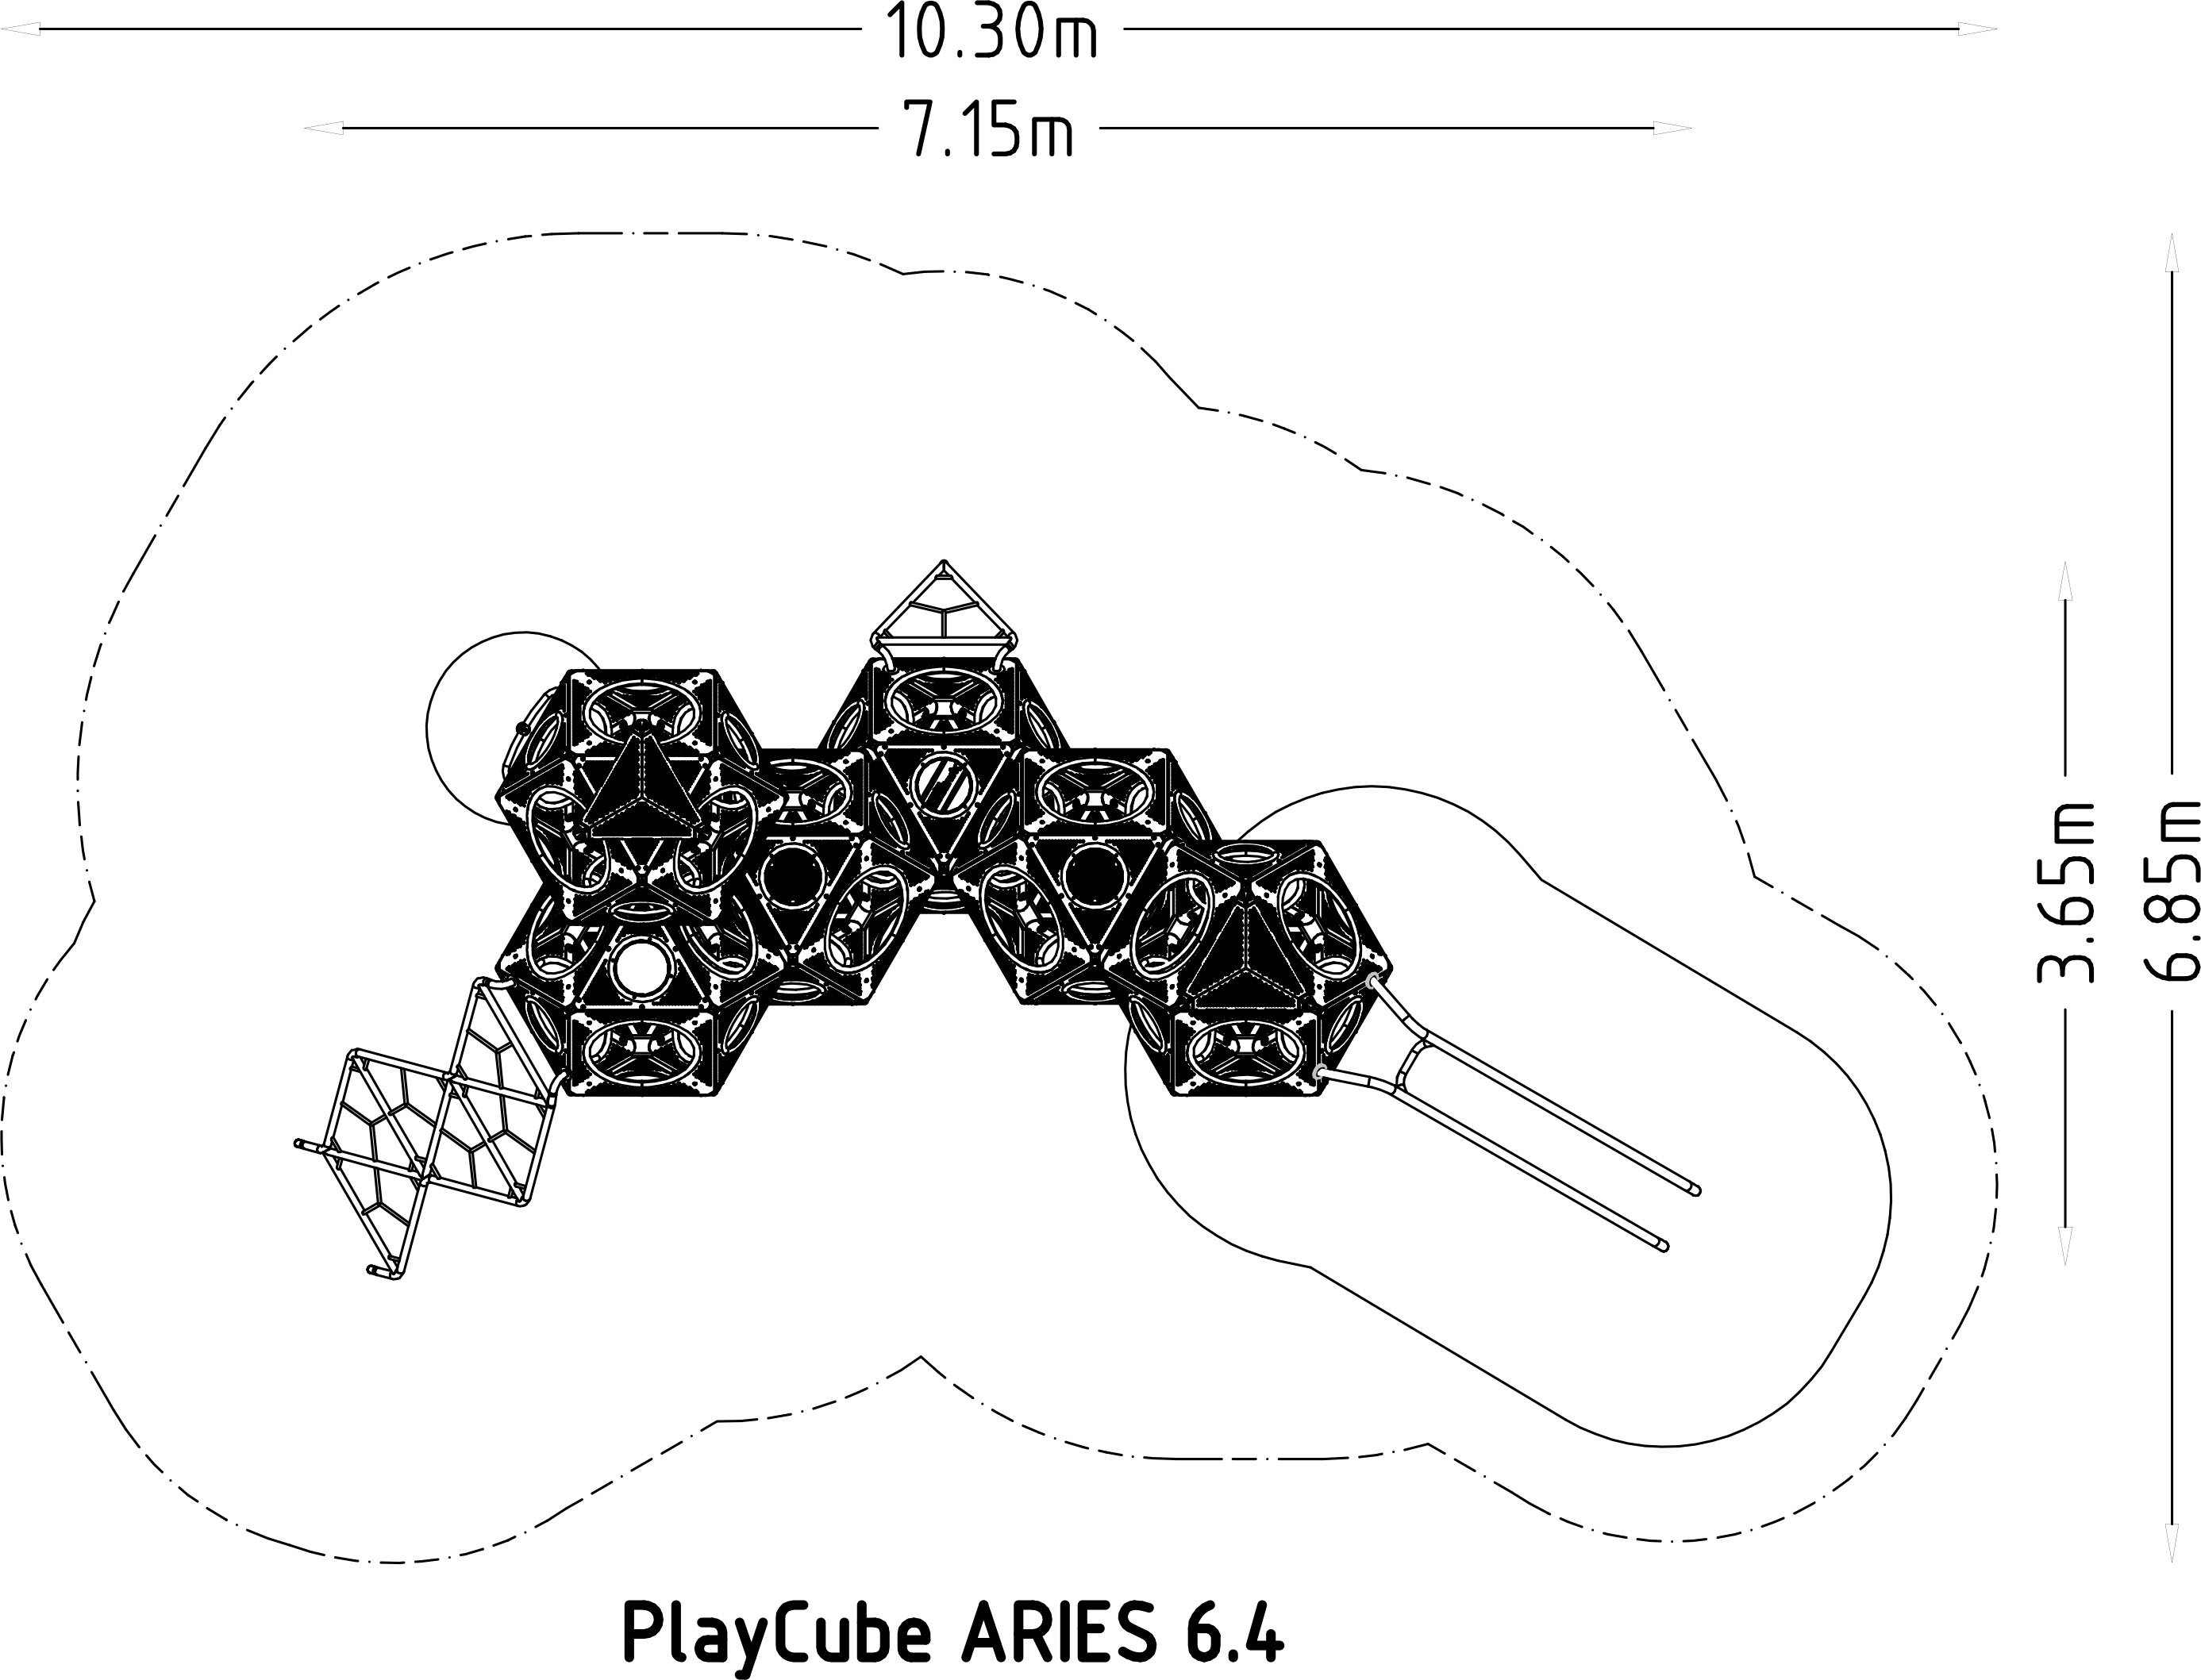 PlayCubes Aries 6.4